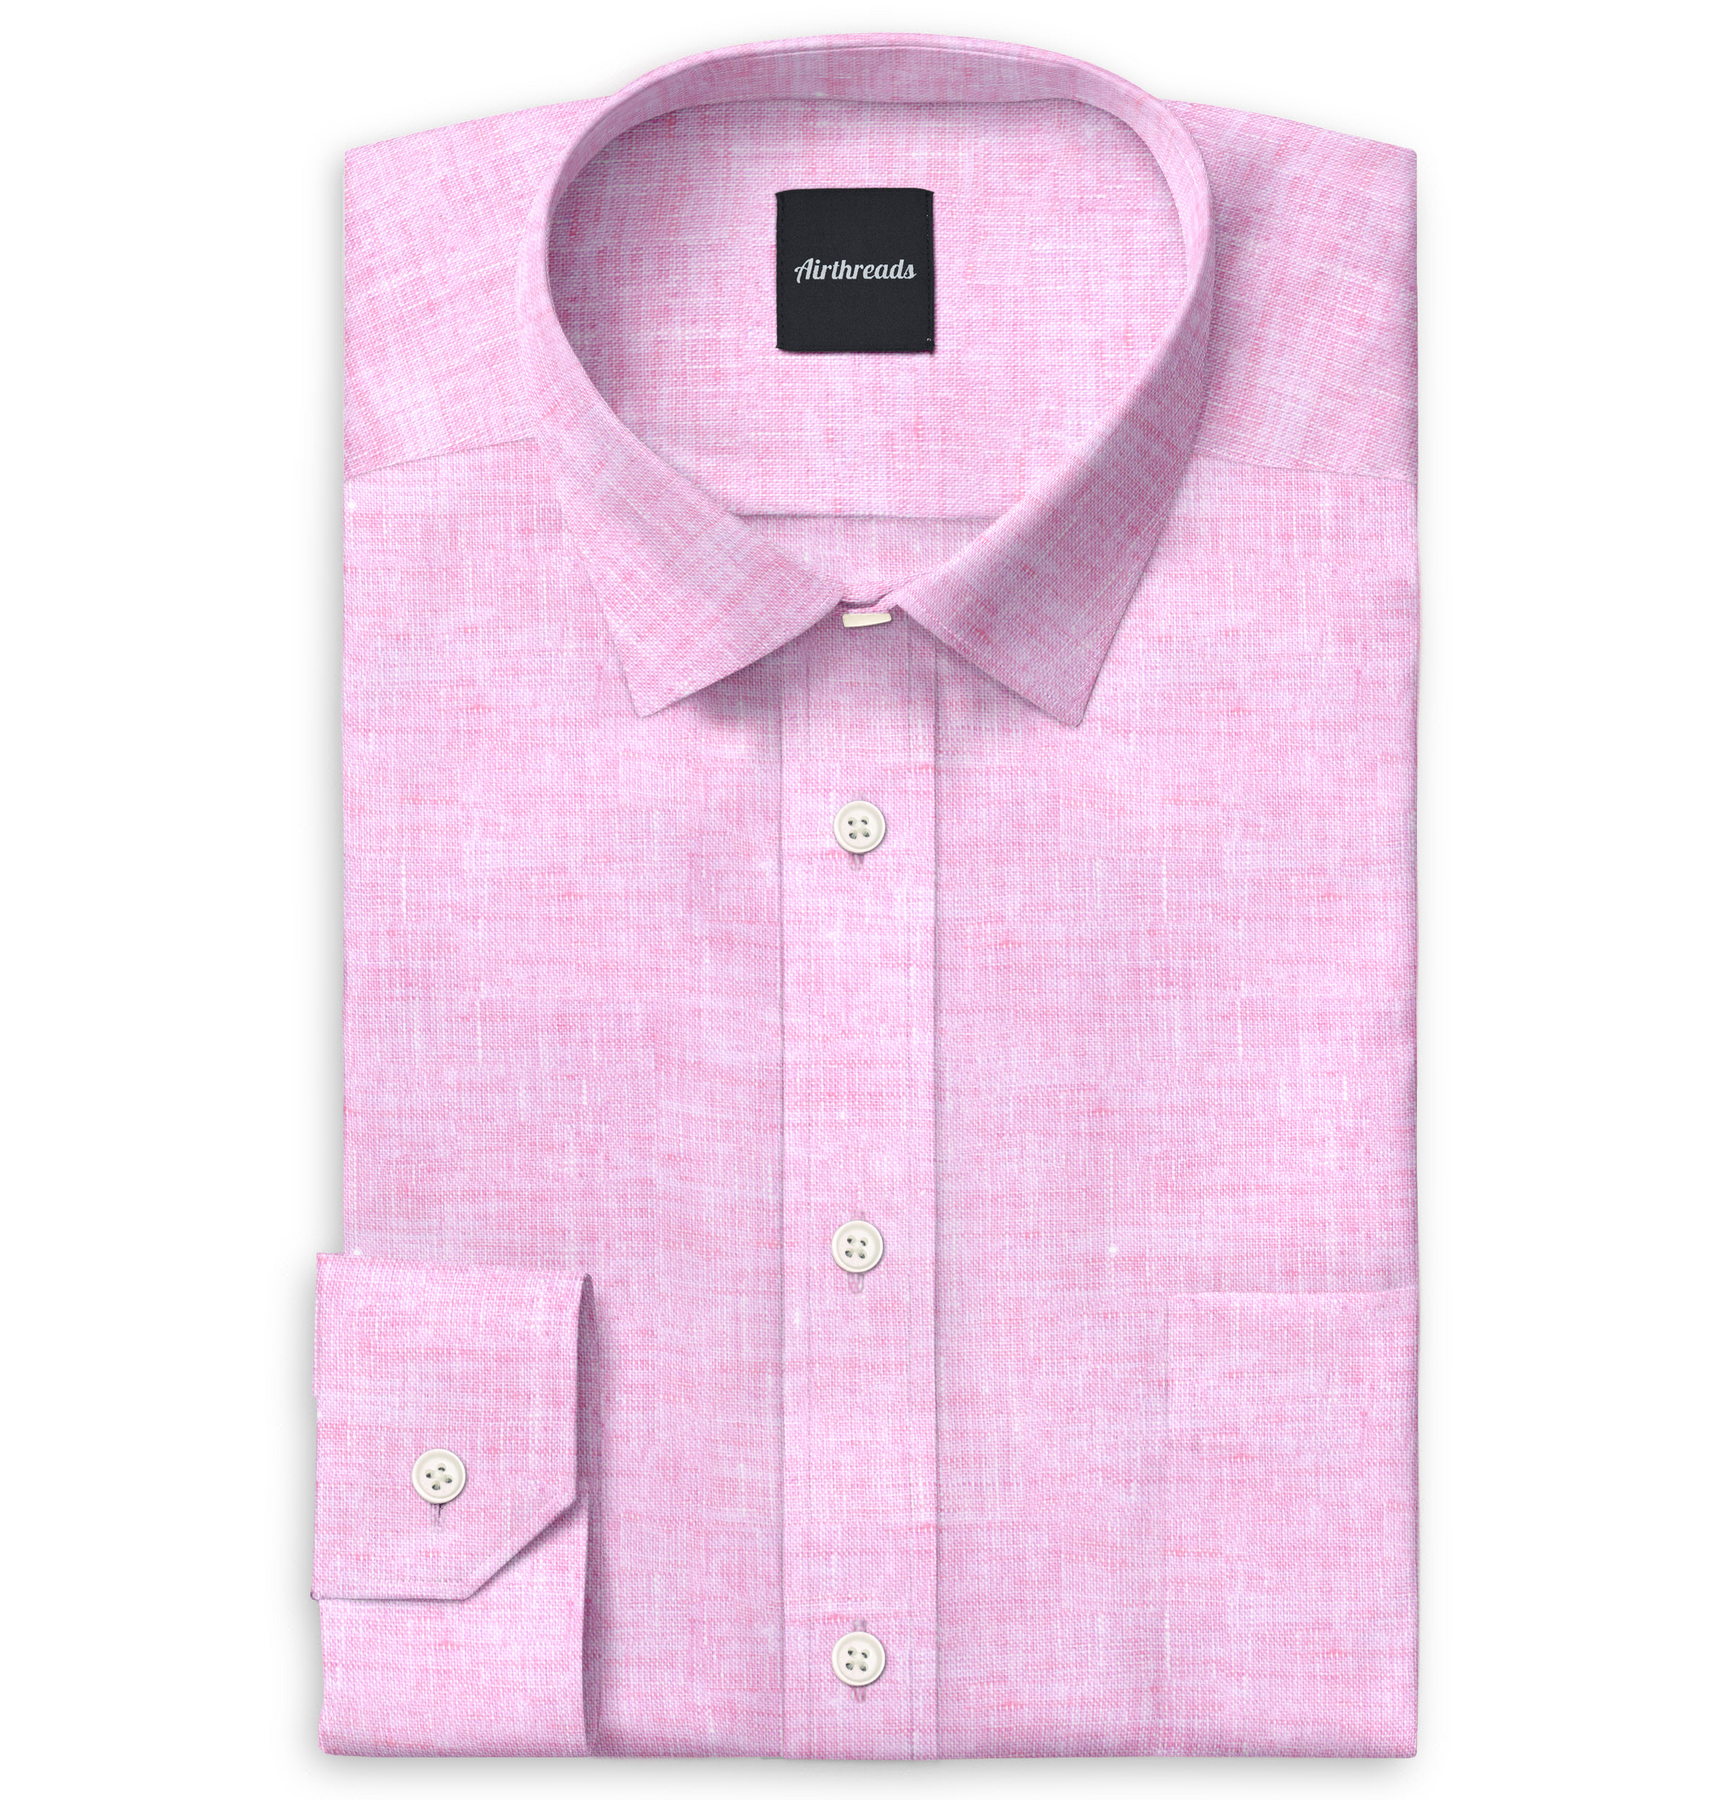 Crosshatch Linen Texture Pink Button Up Long Sleeve Dress Shirt